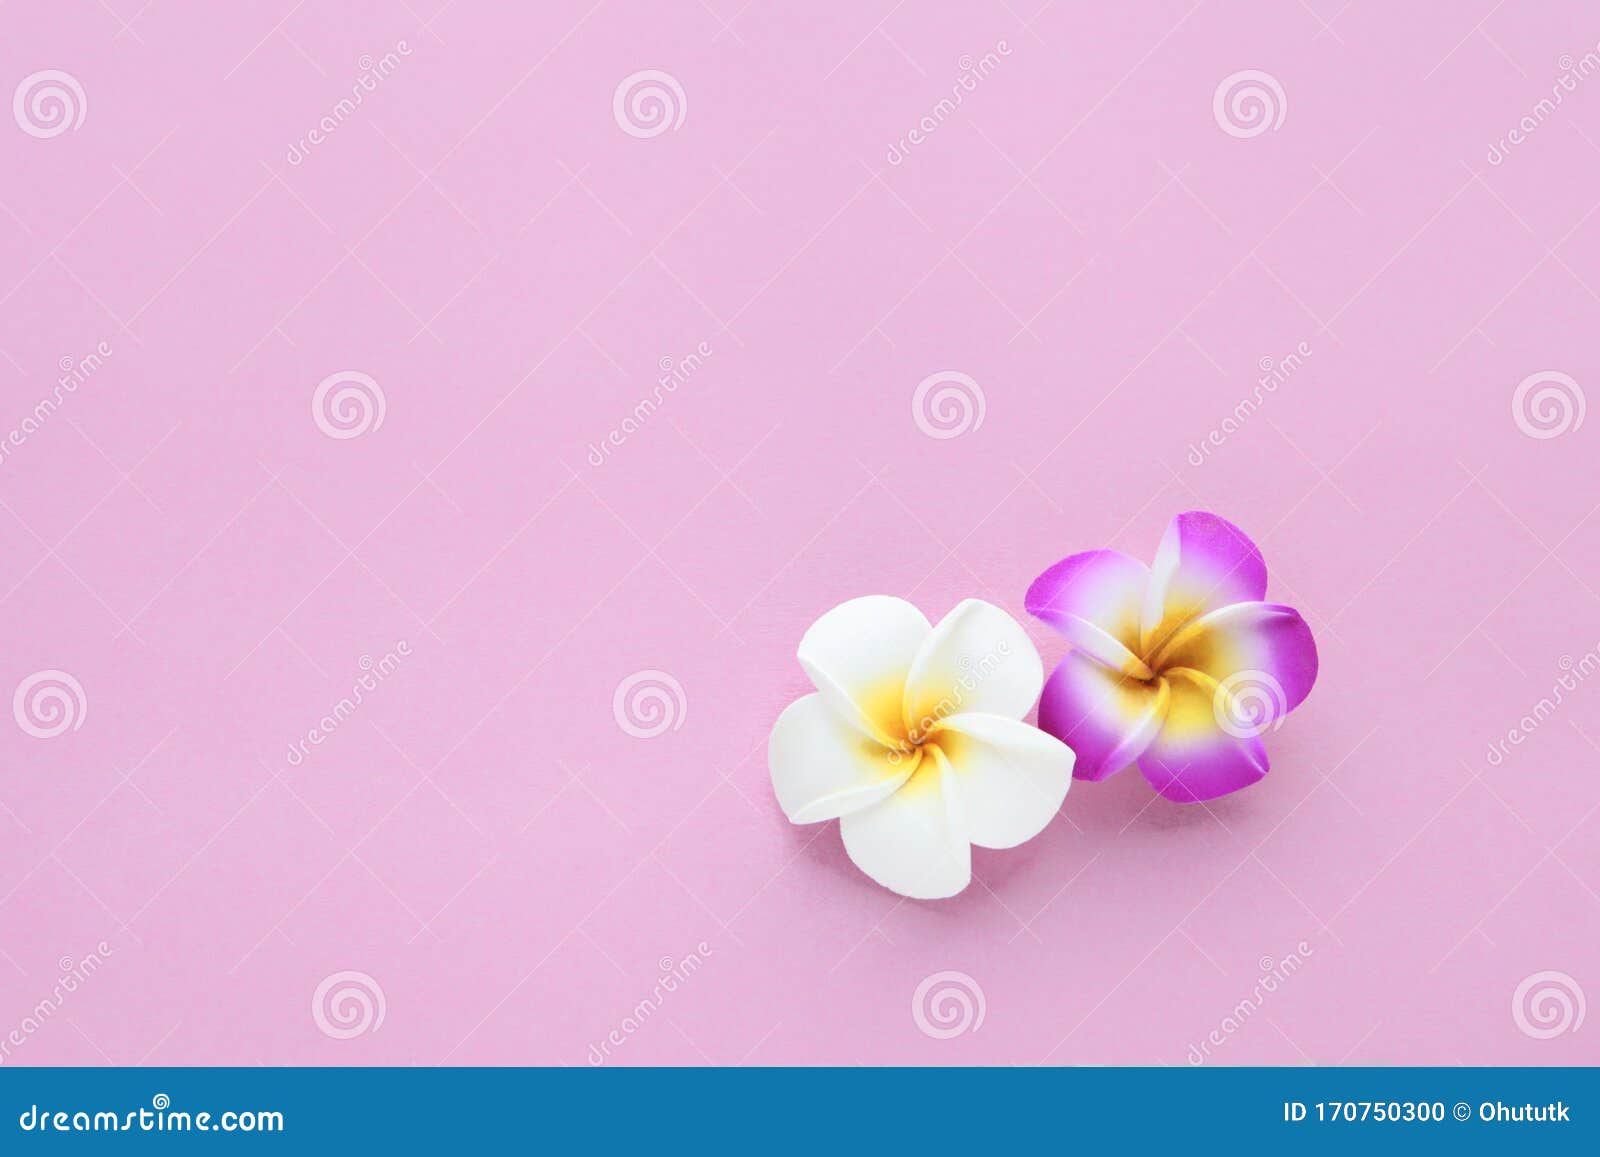 热带花无缝的平原背景 带白色和粉色的脆花花 花纹质适合壁纸或背景春库存照片 图片包括有热带花无缝的平原背景 带白色和粉色的脆花花 花纹质适合壁纸或背景